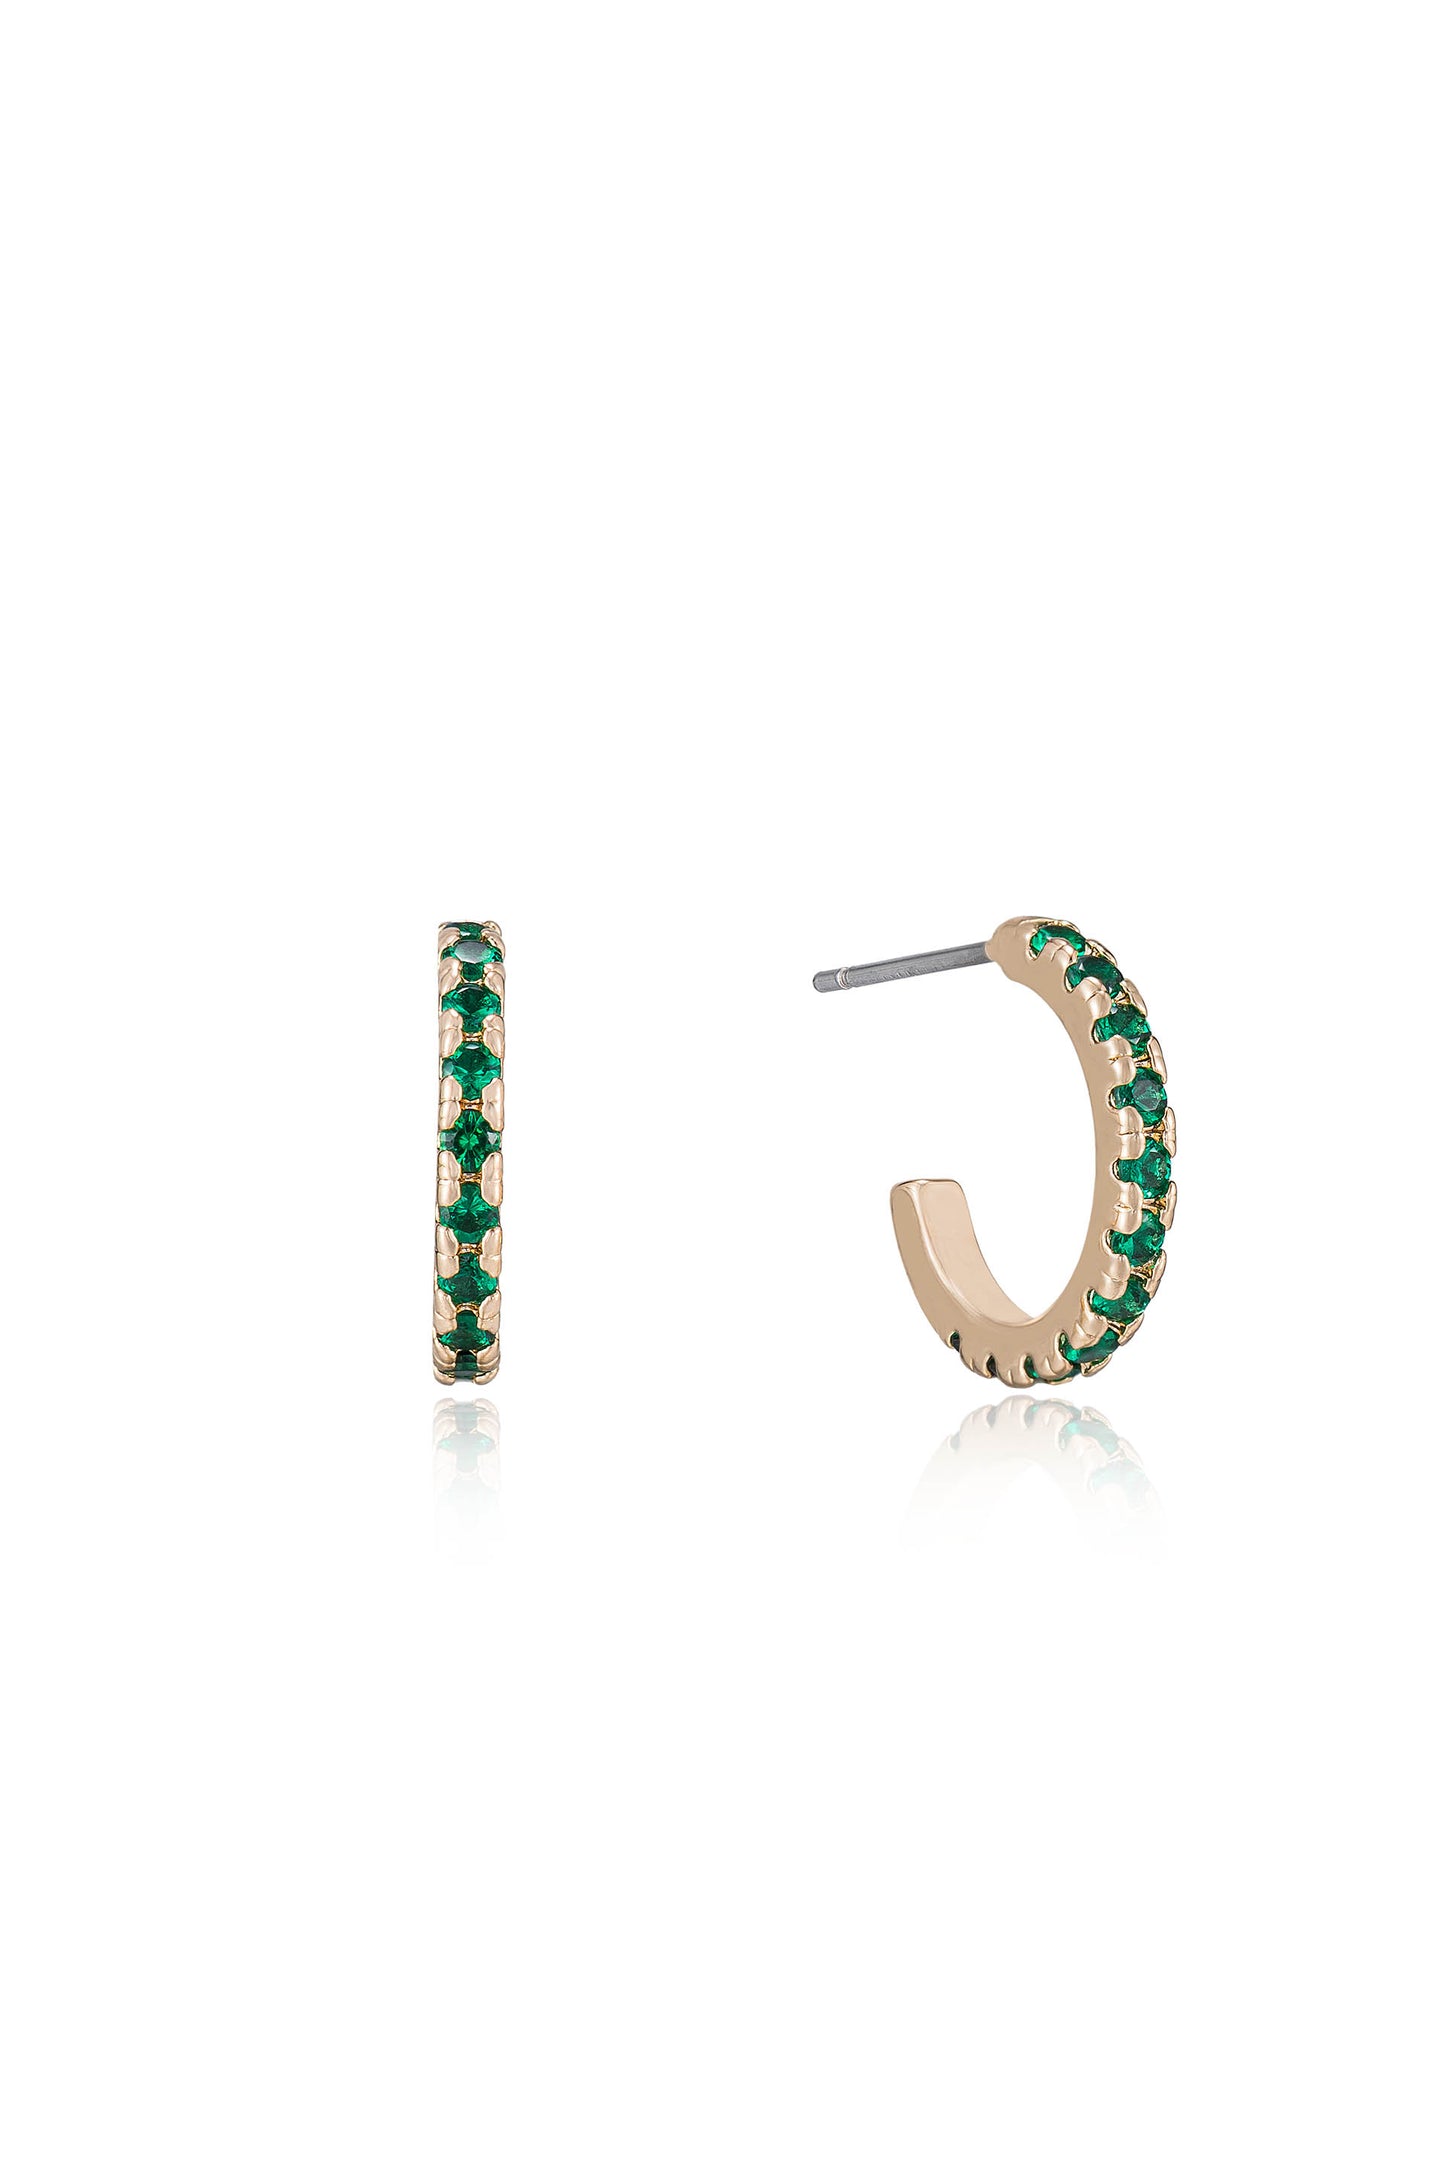 Colorful Crystal Huggie Earrings in green